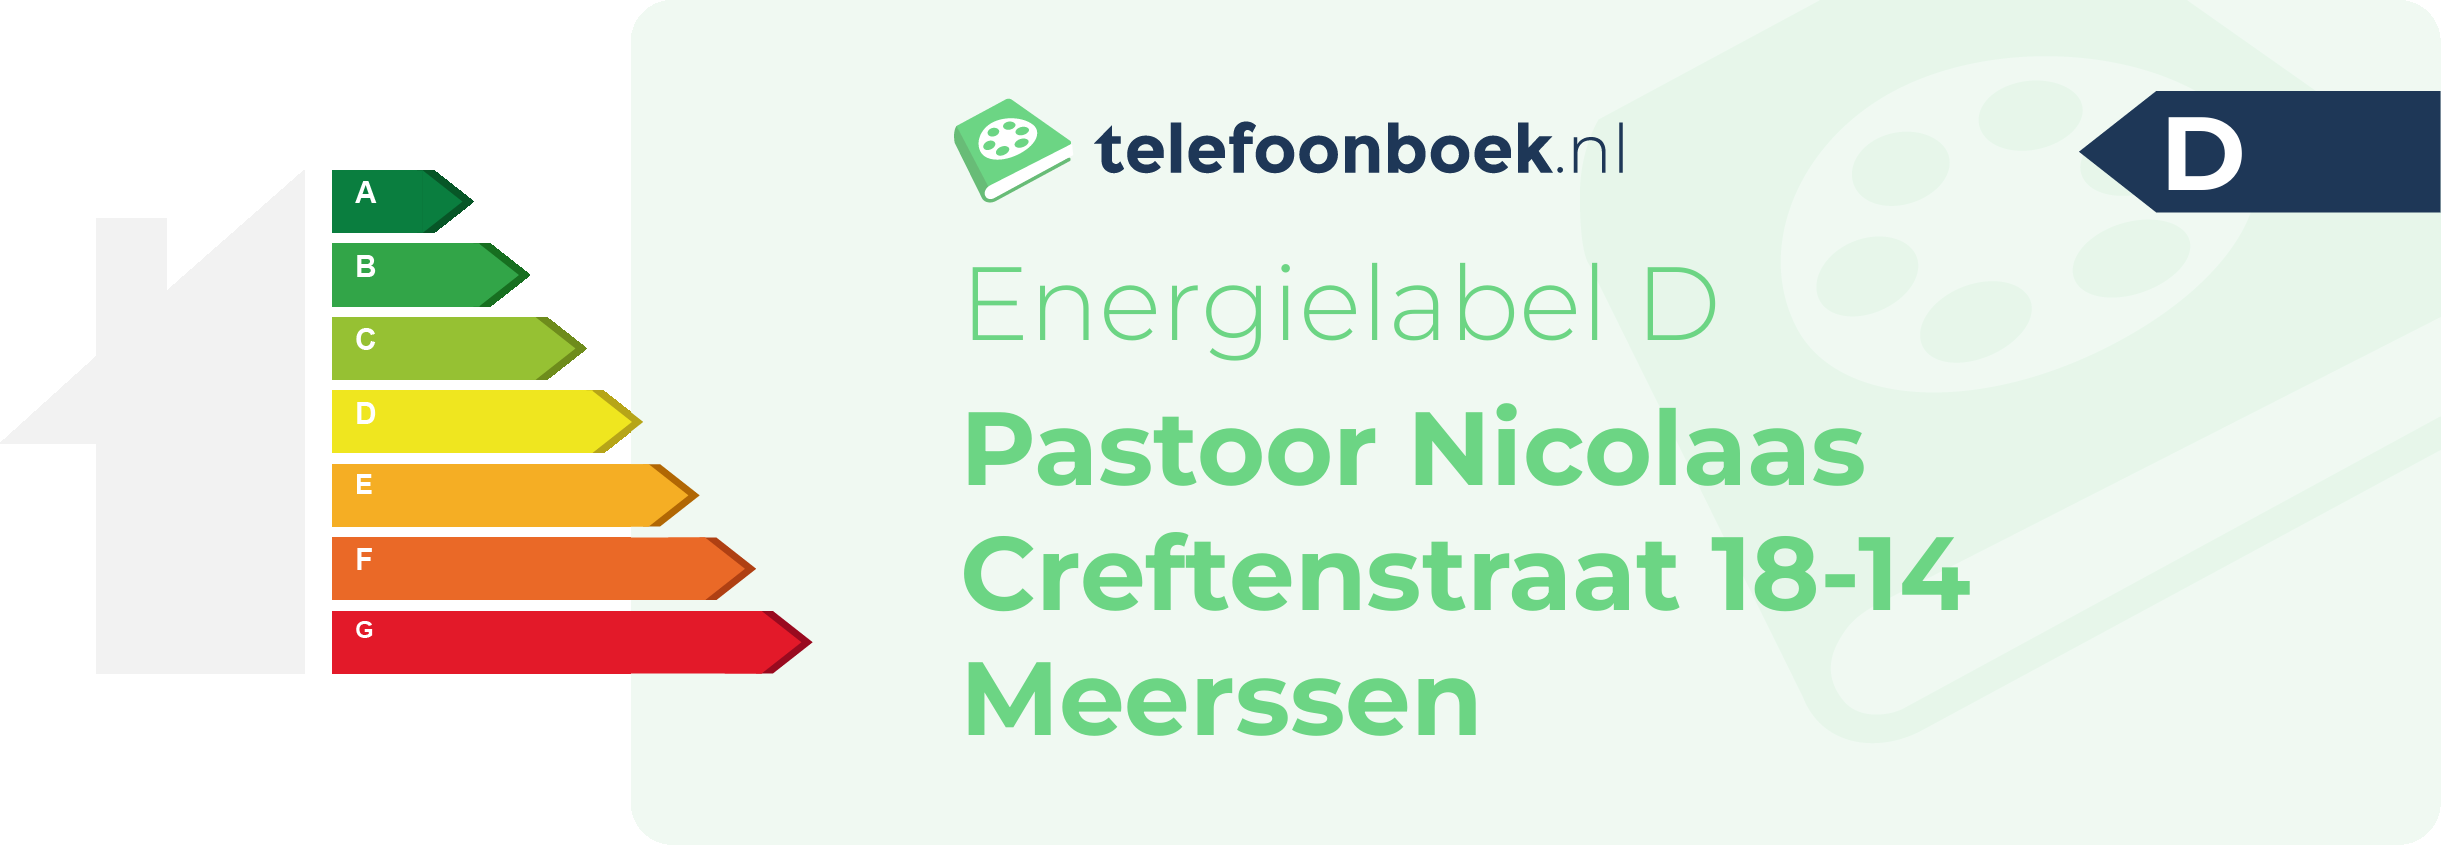 Energielabel Pastoor Nicolaas Creftenstraat 18-14 Meerssen